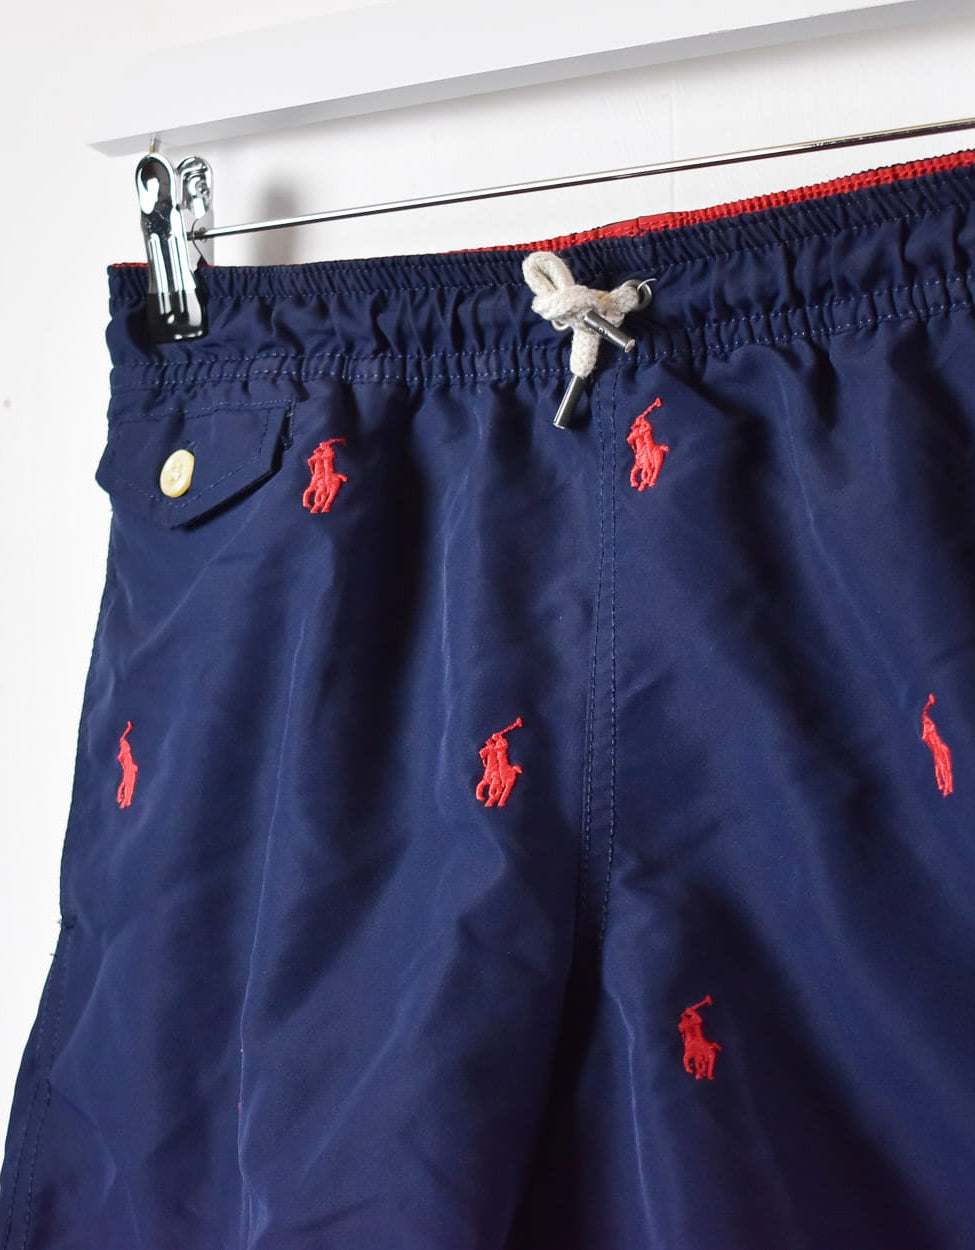 Navy Polo Ralph Lauren Mesh Shorts - Medium Women's